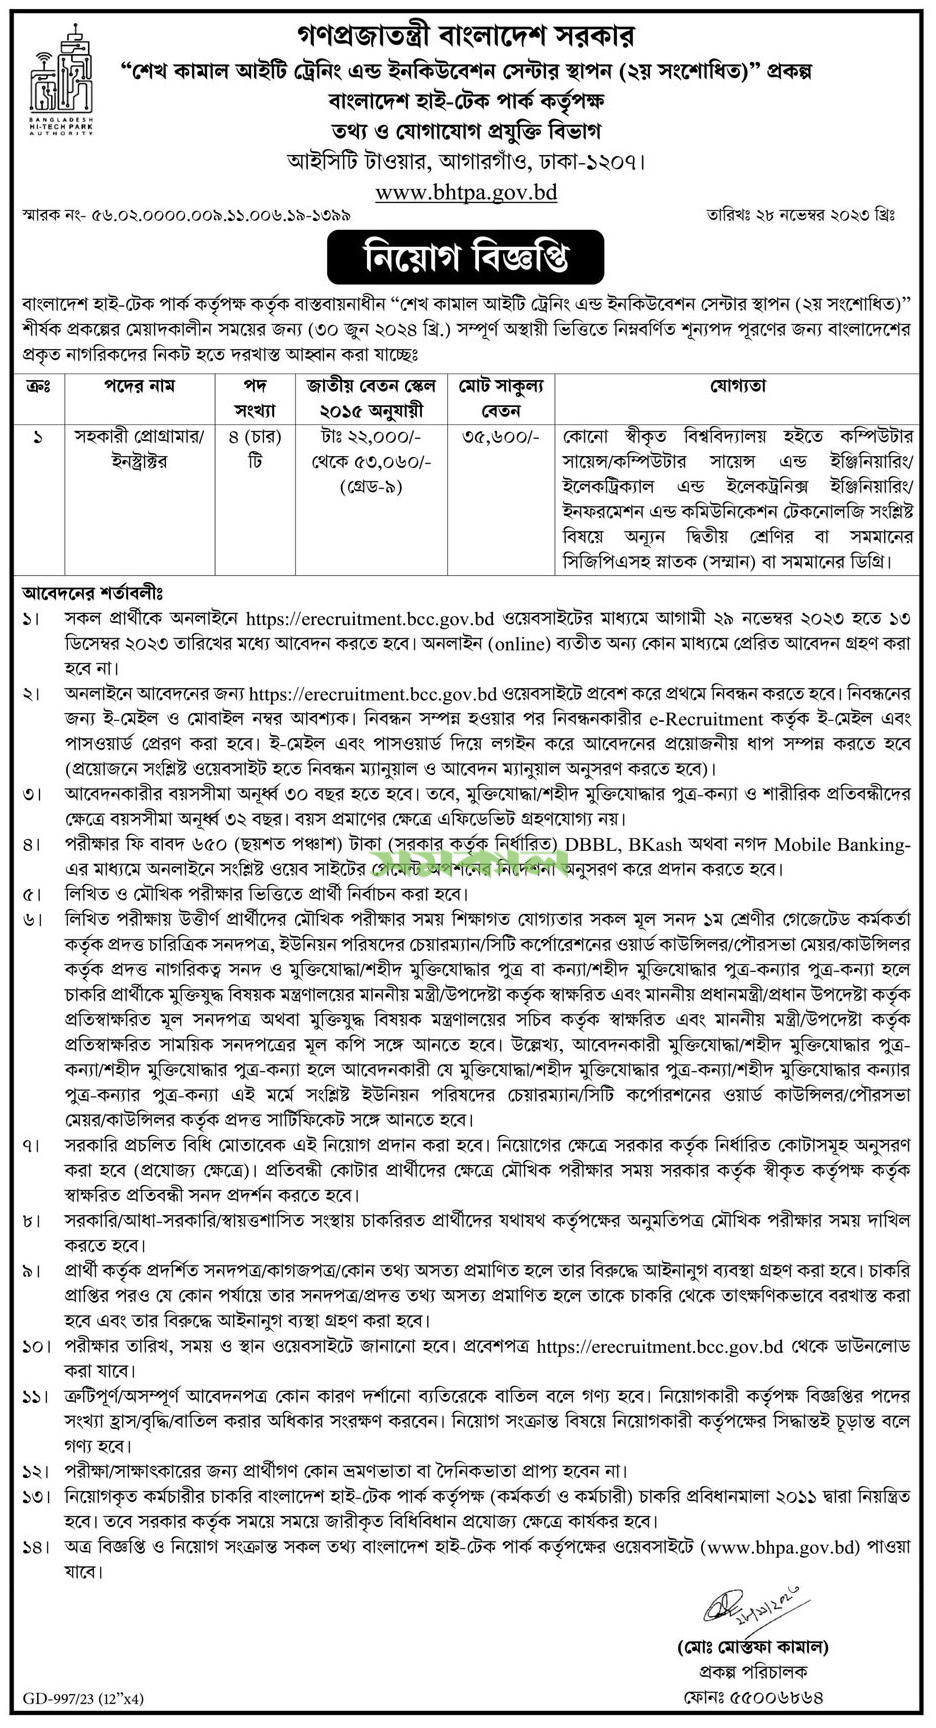 Bangladesh Hi-Tech Park Authority Information Job Circular